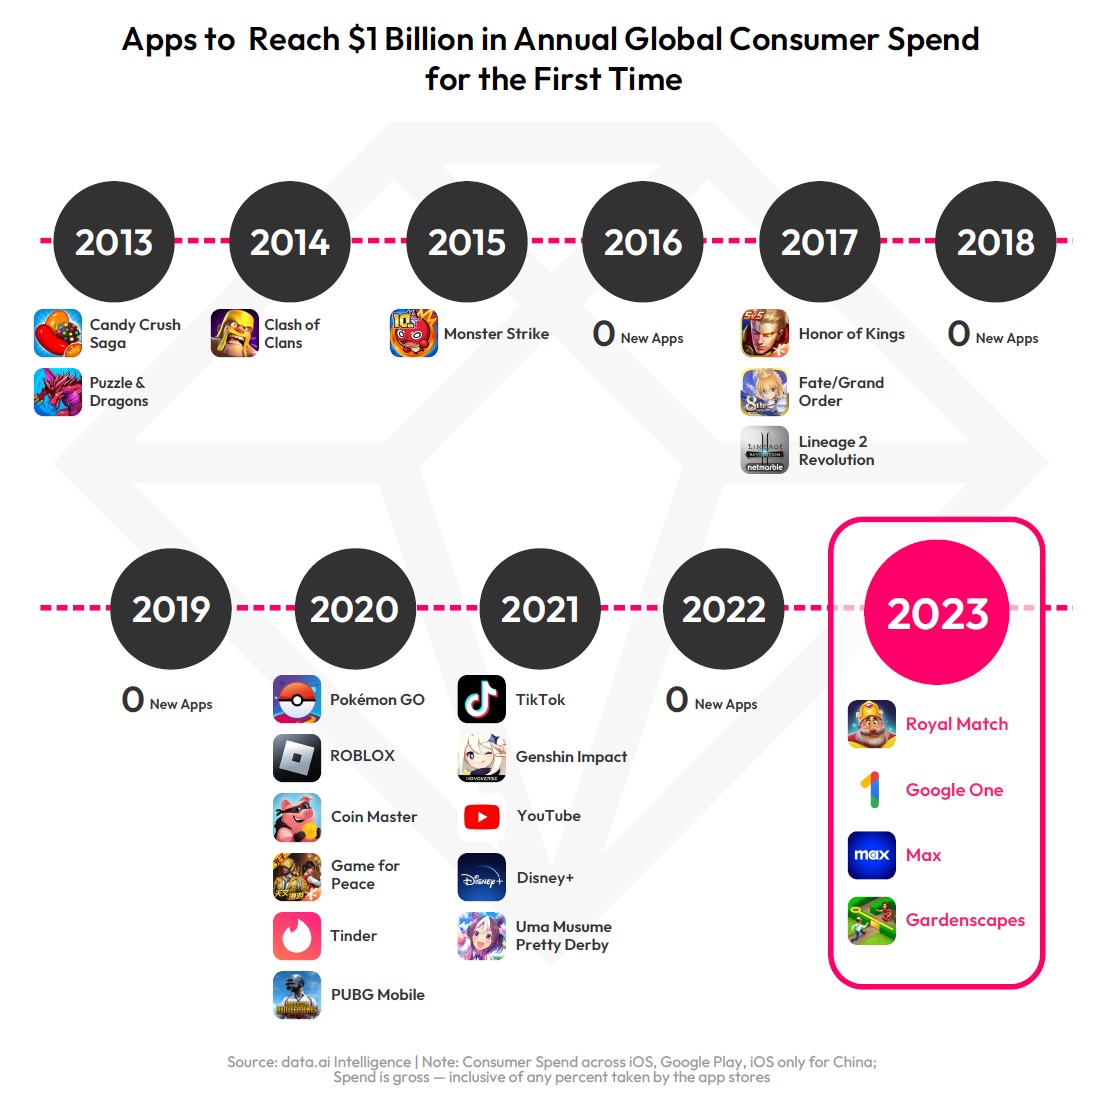 Il club dei milionari: tutte le app mobile che hanno infranto il miliardo di dollari di fatturato. Ben 16 sono videogiochi!